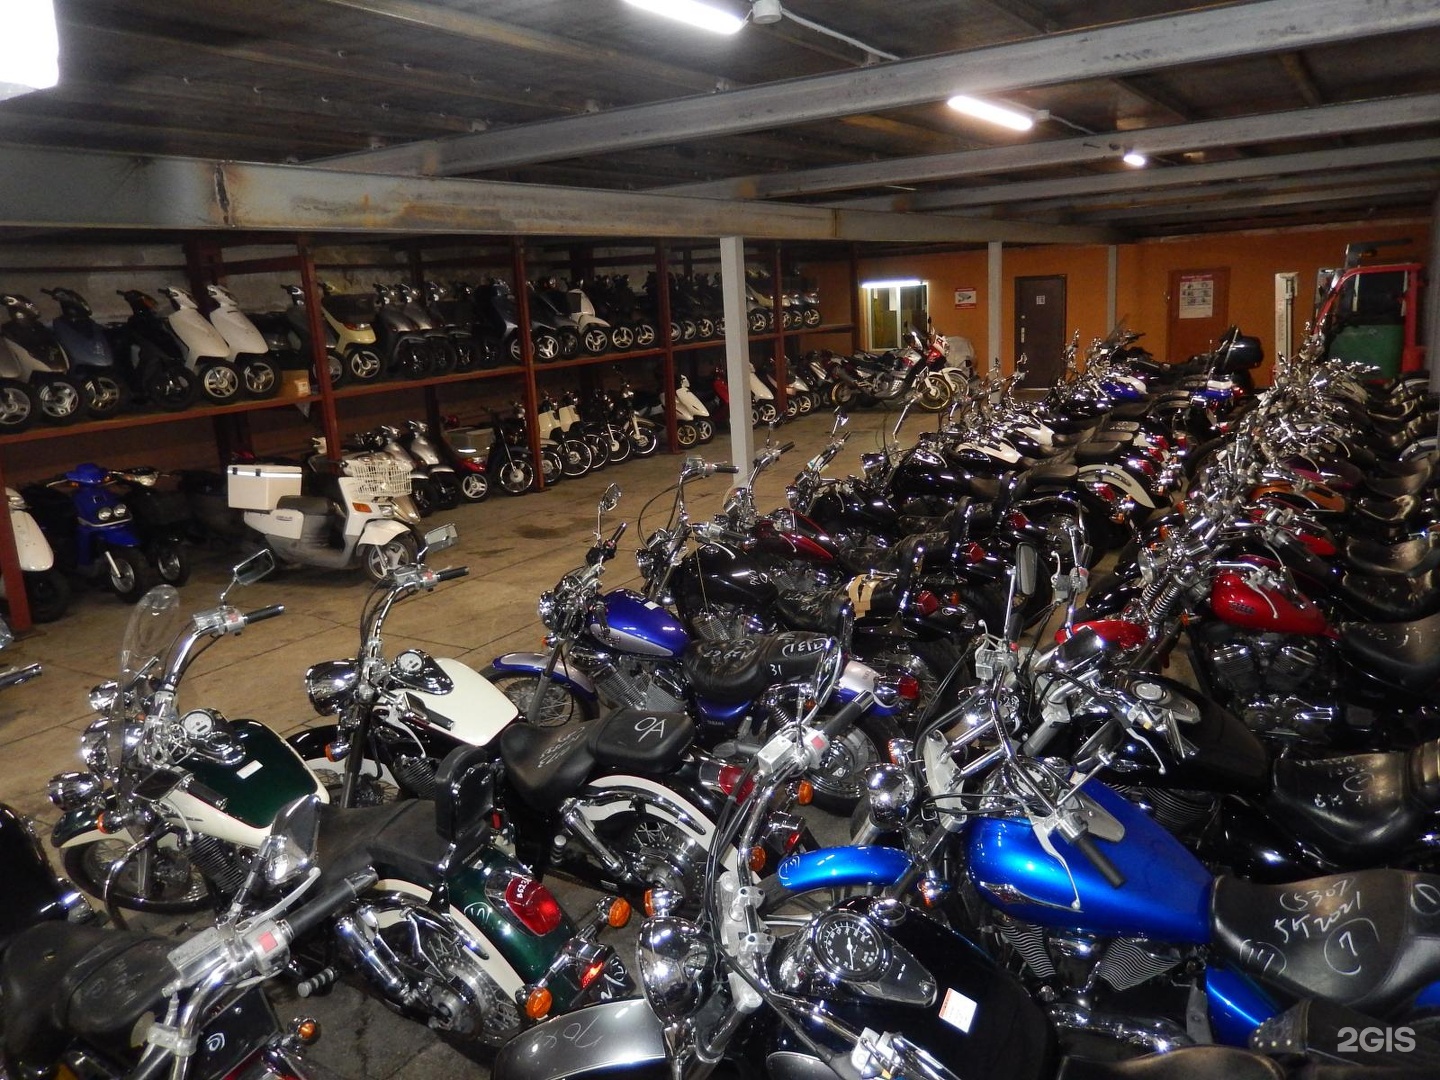 Купить мотоцикл в омске области. Магазины мототехники в Омске. Мото магазин Сосновка. Япония ТРЕЙД мотоциклы. Салон мотоциклов в Омске.